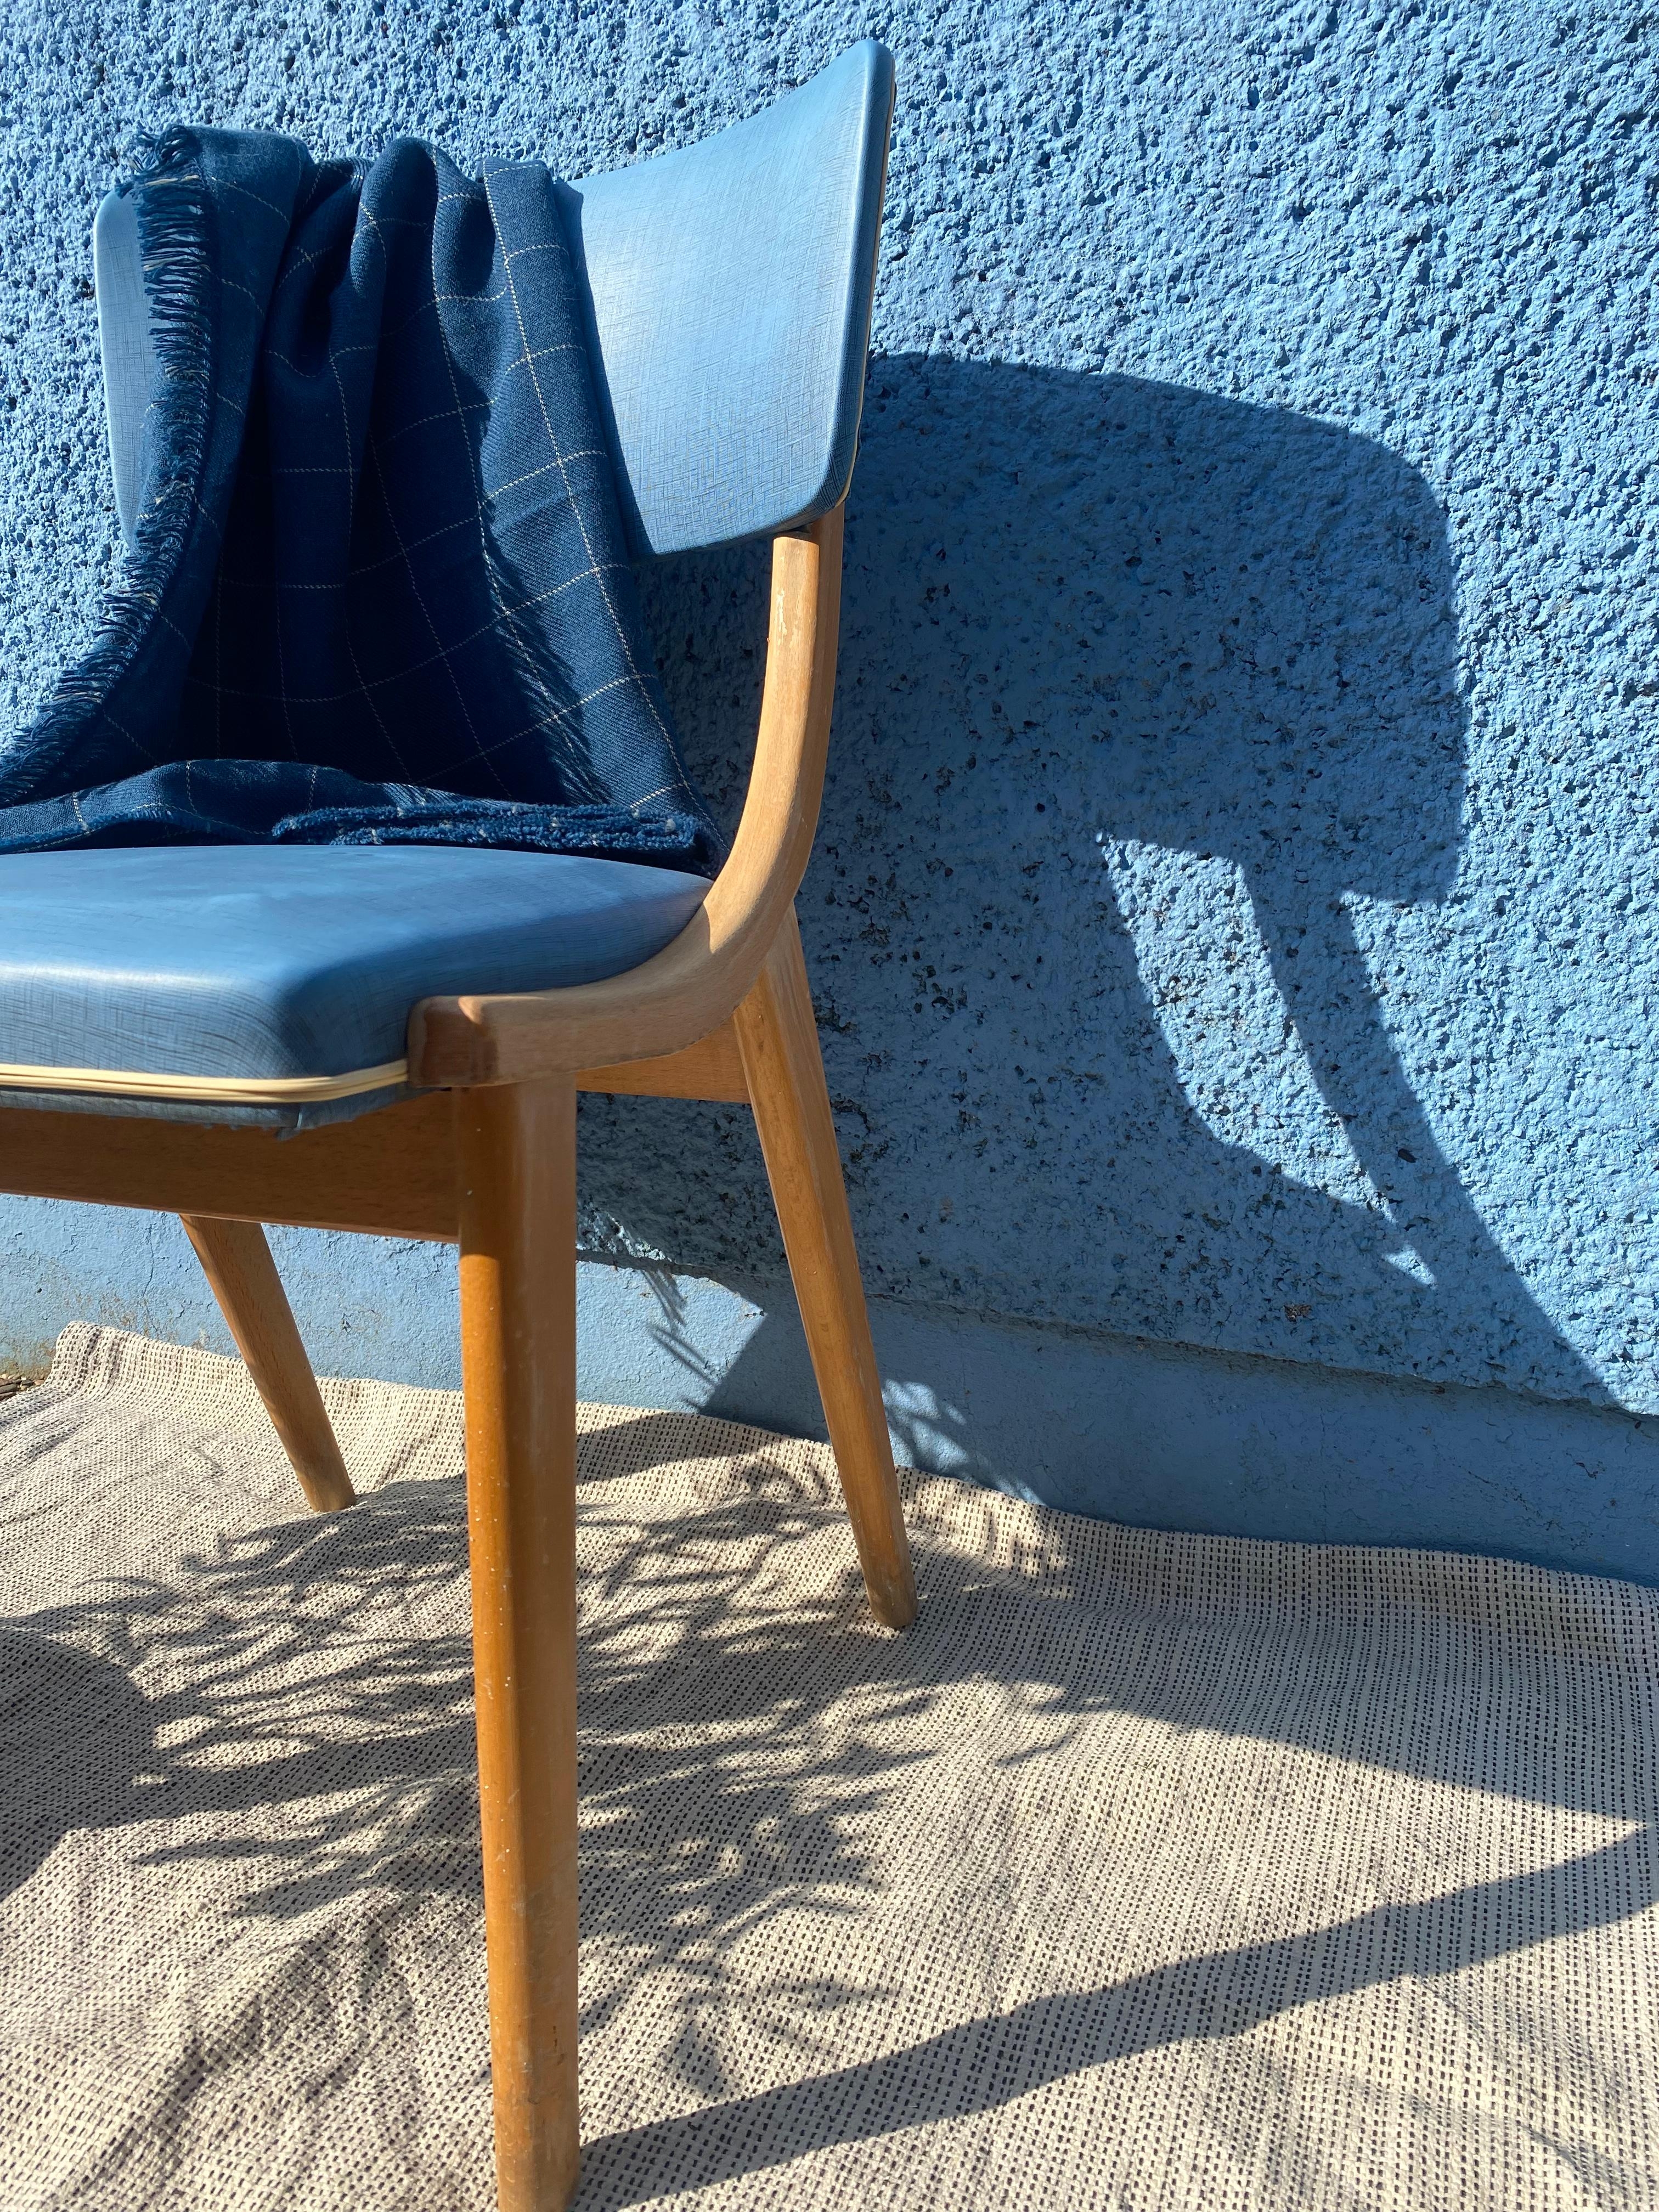 Mein blauer blauer Platz ist frei...💙 #stuhl #grünerleben #vintage #retro #blau #scandistyle #simple #sommer #bohostyle